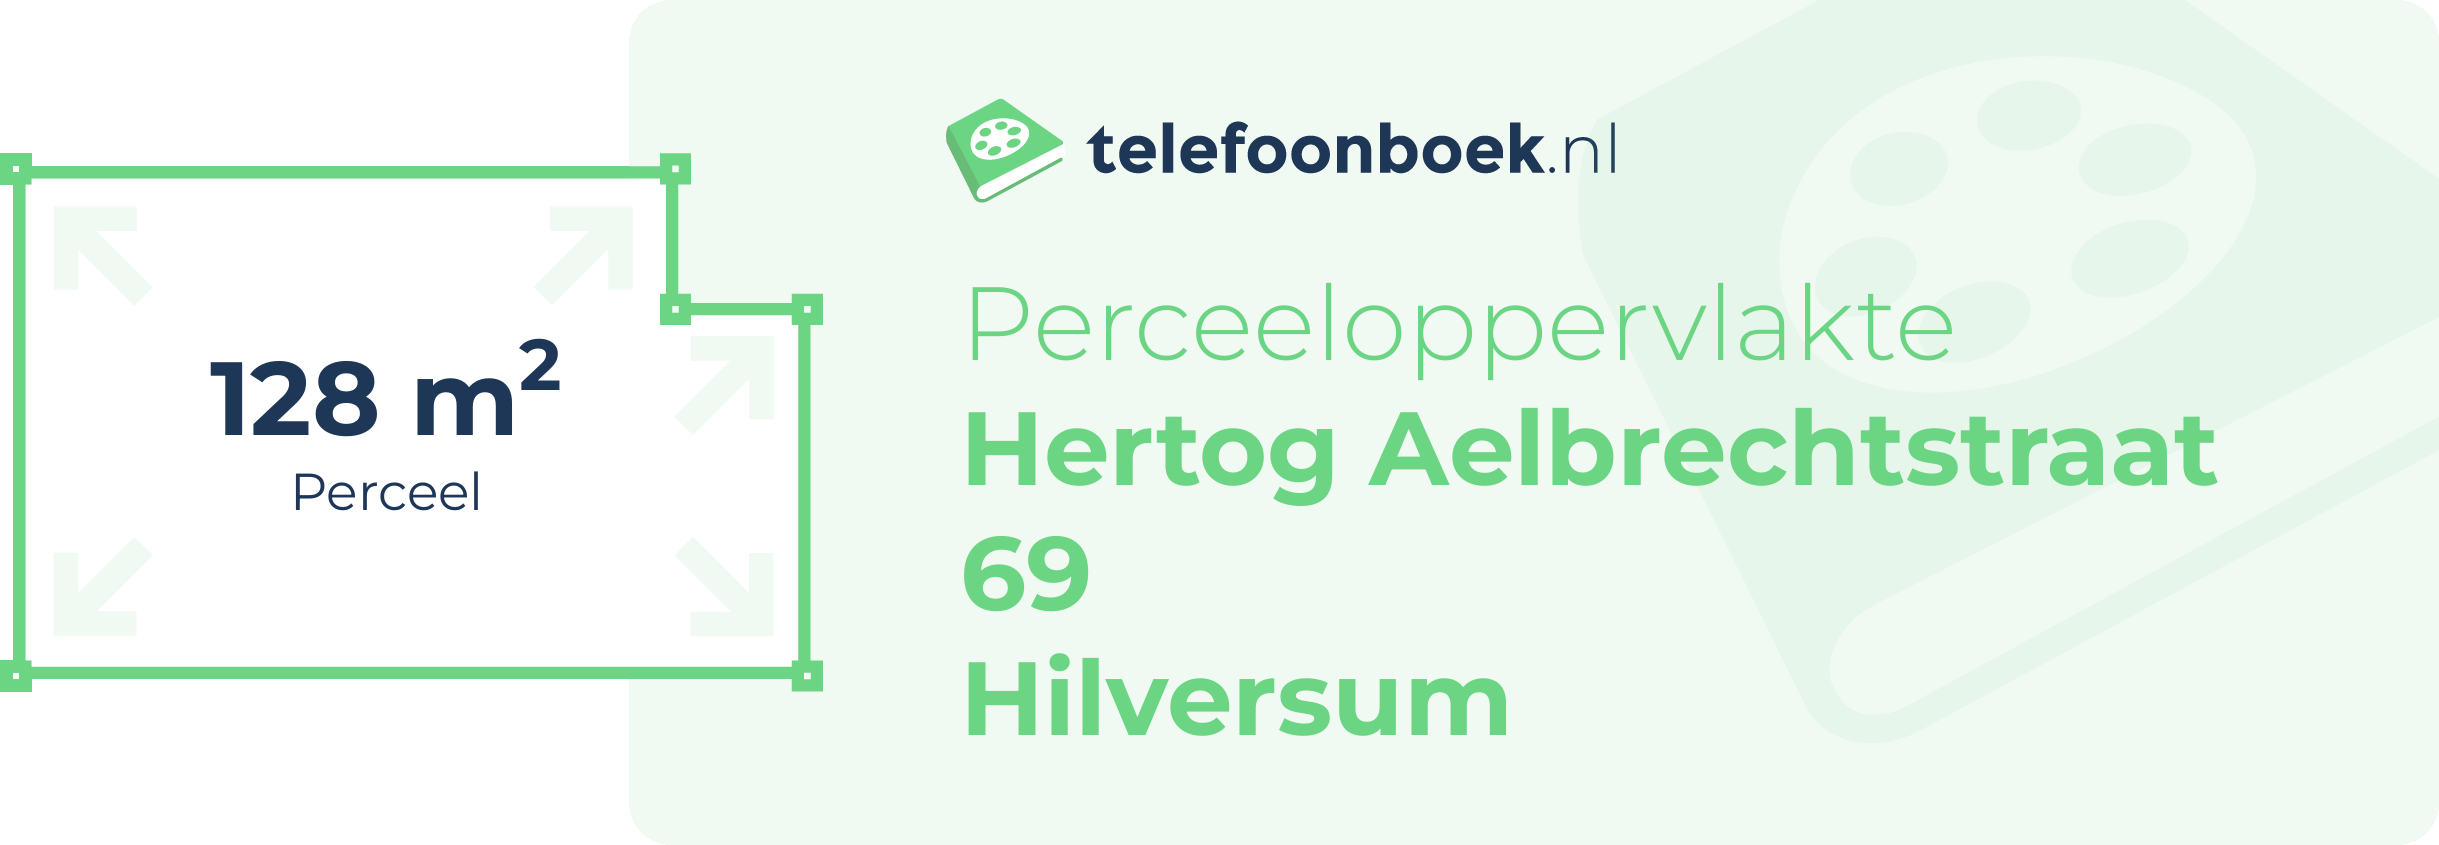 Perceeloppervlakte Hertog Aelbrechtstraat 69 Hilversum